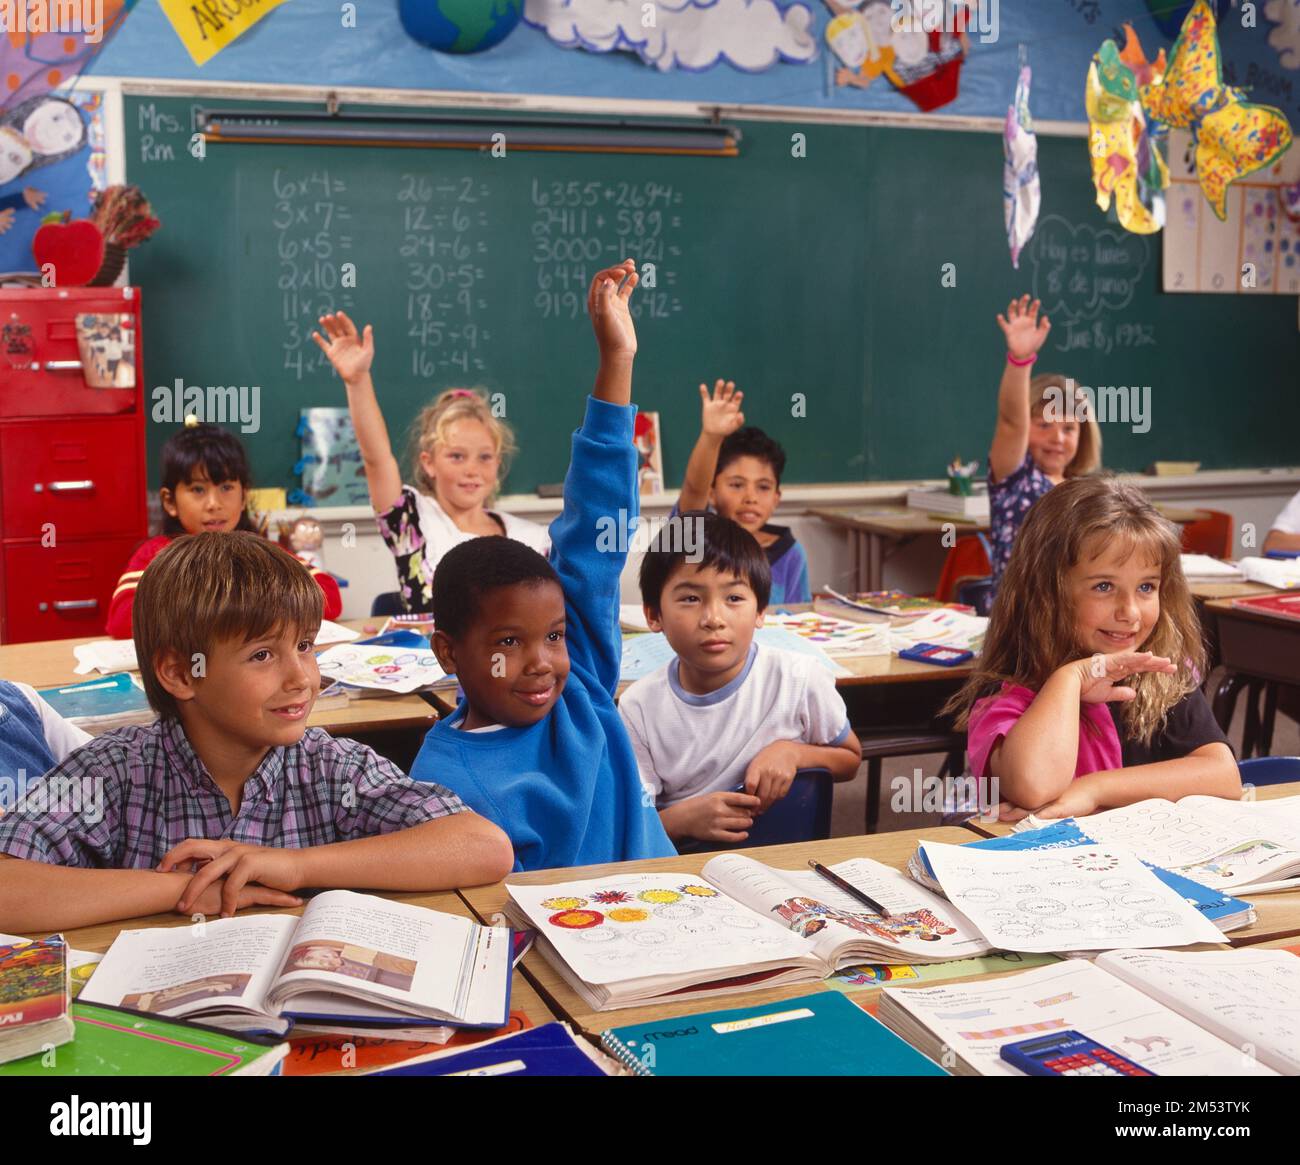 Kinder in einem Klassenzimmer, mit erhobenen Armen, um vom Lehrer erkannt zu werden Stockfoto